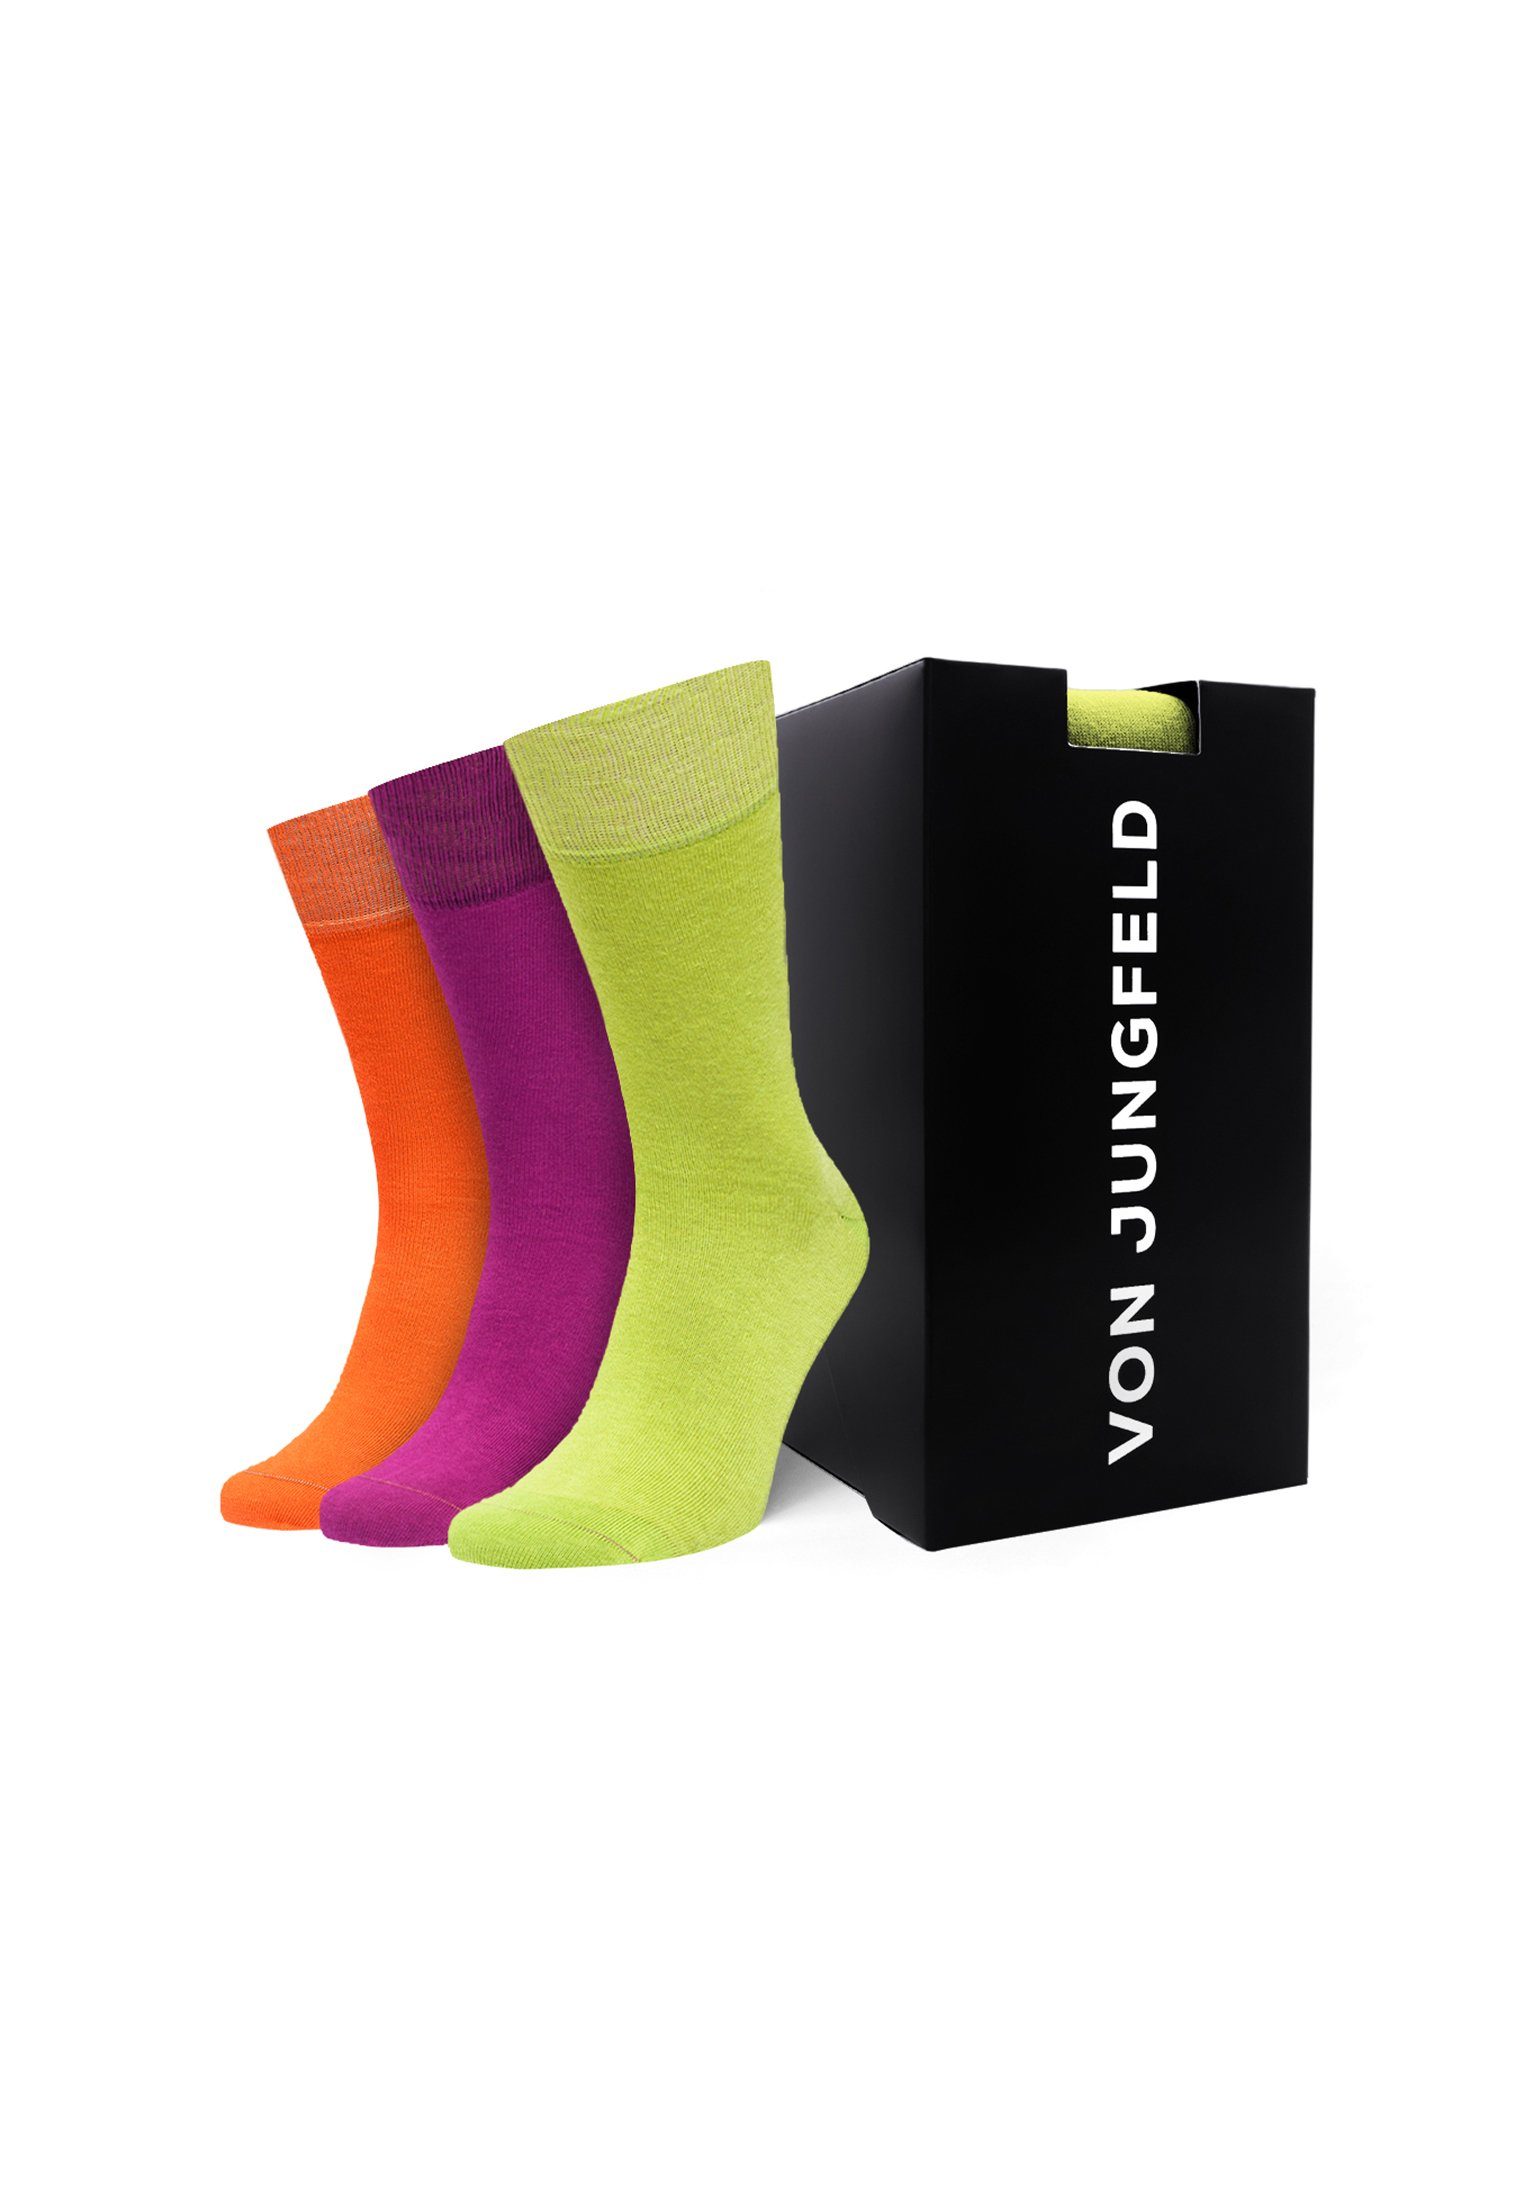 von Jungfeld Socken Geschenk Box online kaufen | OTTO